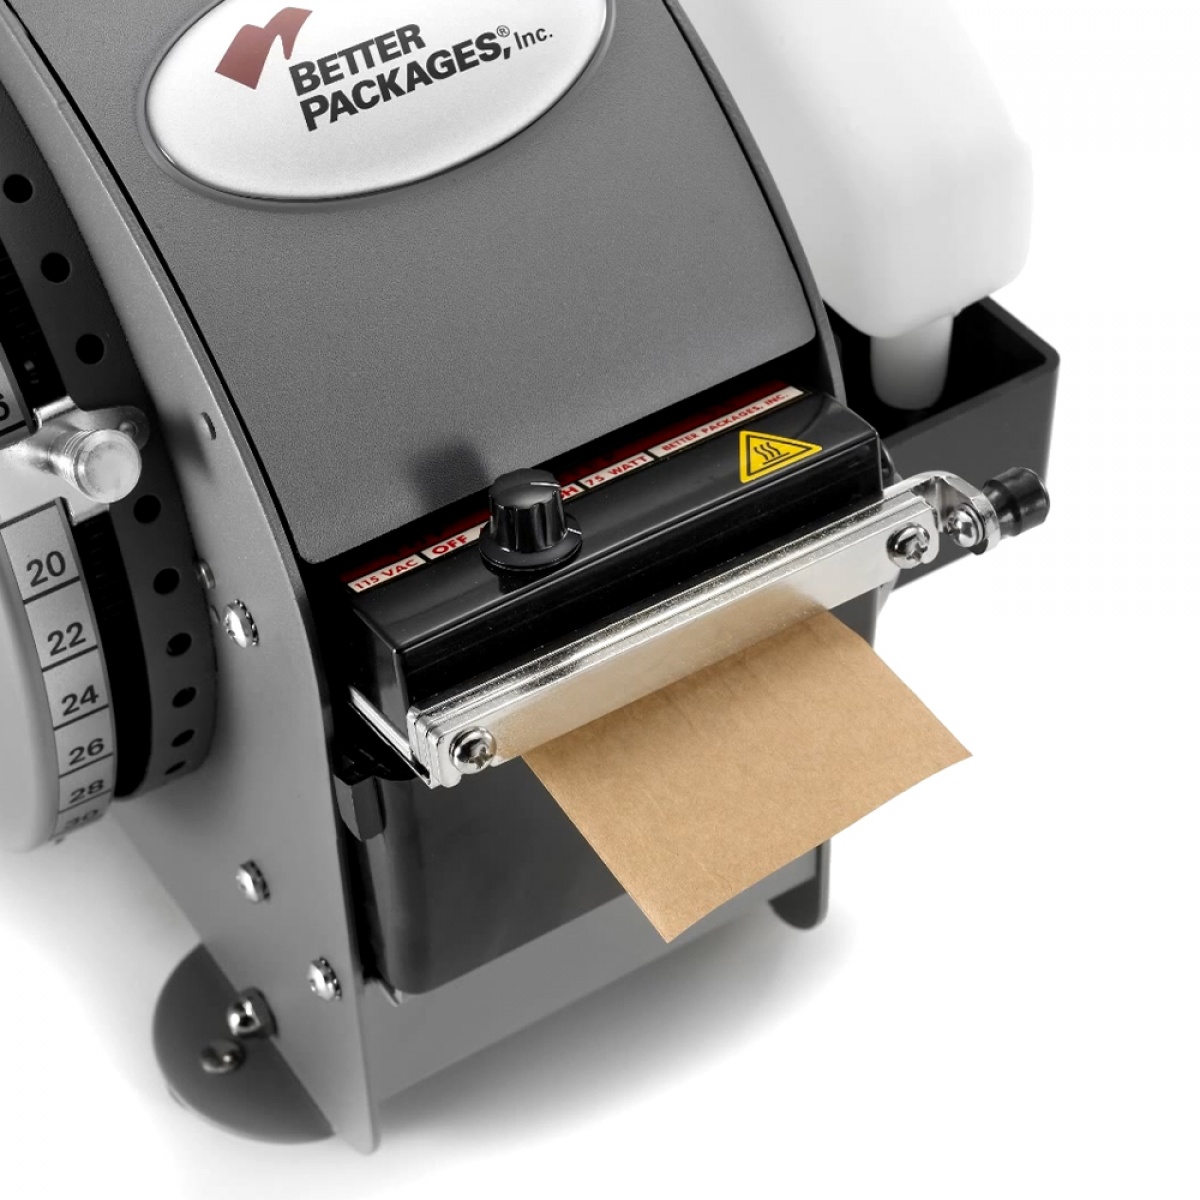 Regulace ohřevu papírové lepicí pásky pro vyšší přilnavost